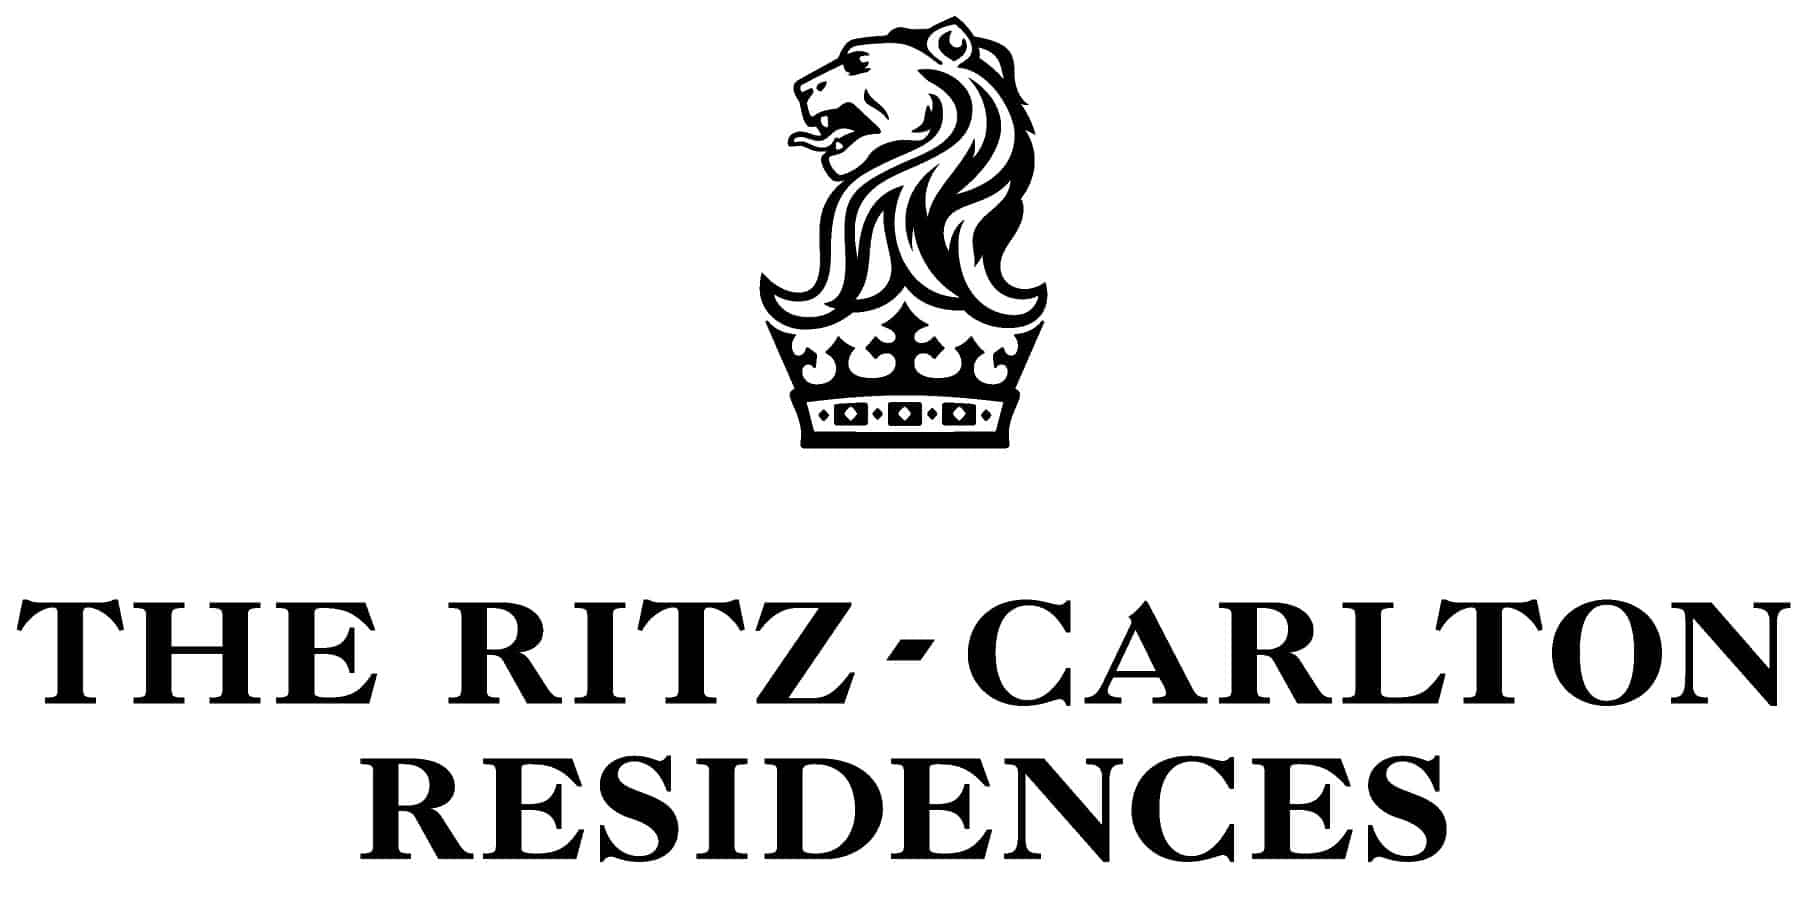 The Ritz Carlton Condos Pompano Beach Logo